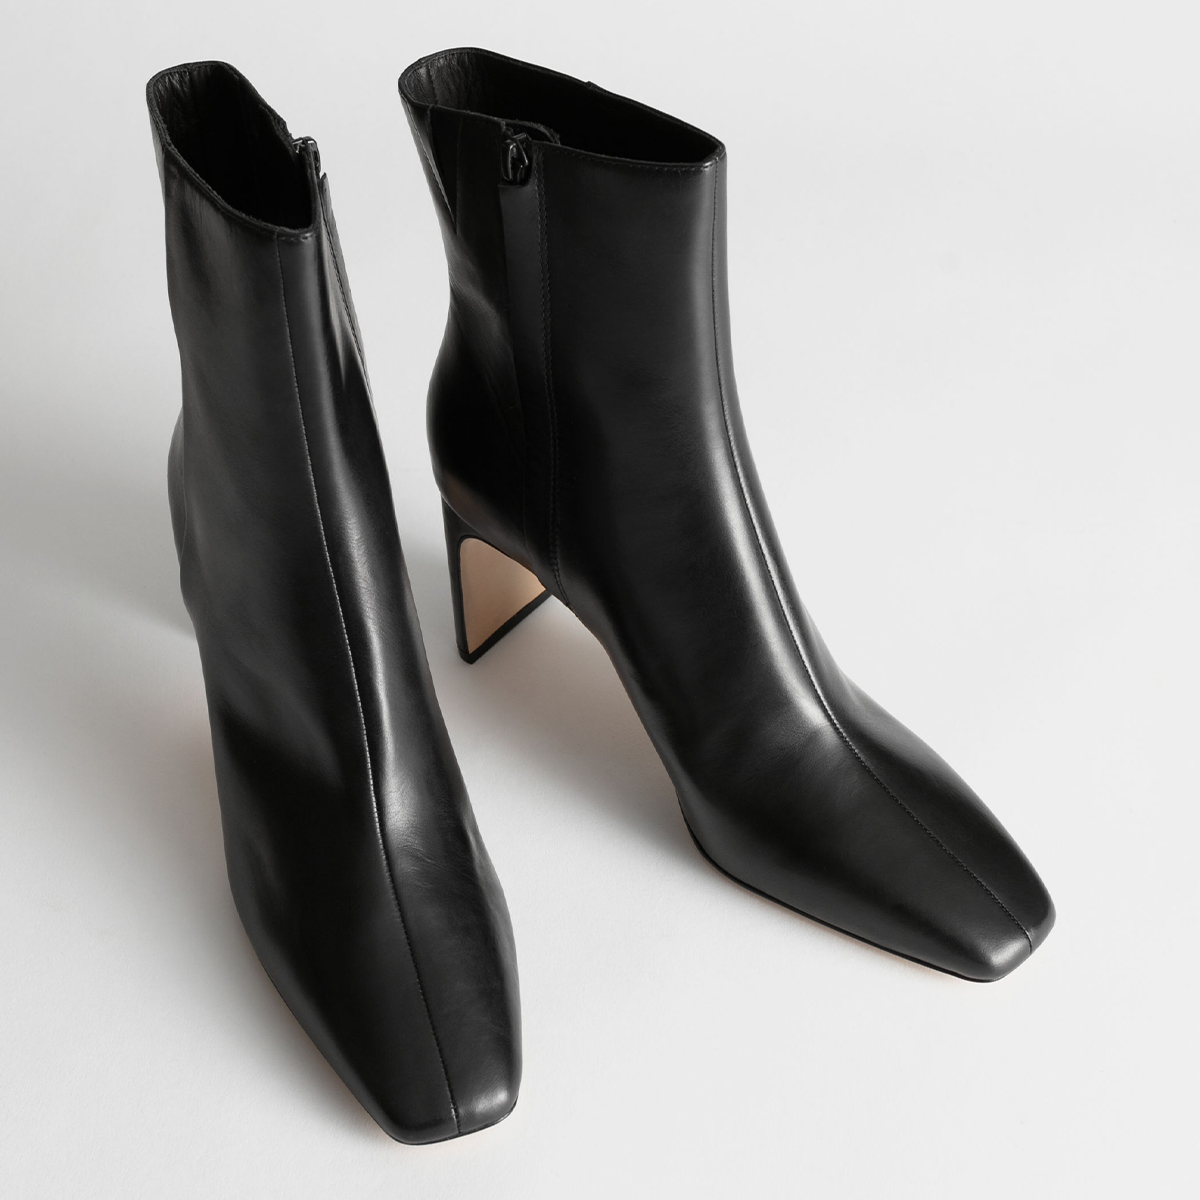 designer ankle boots on sale